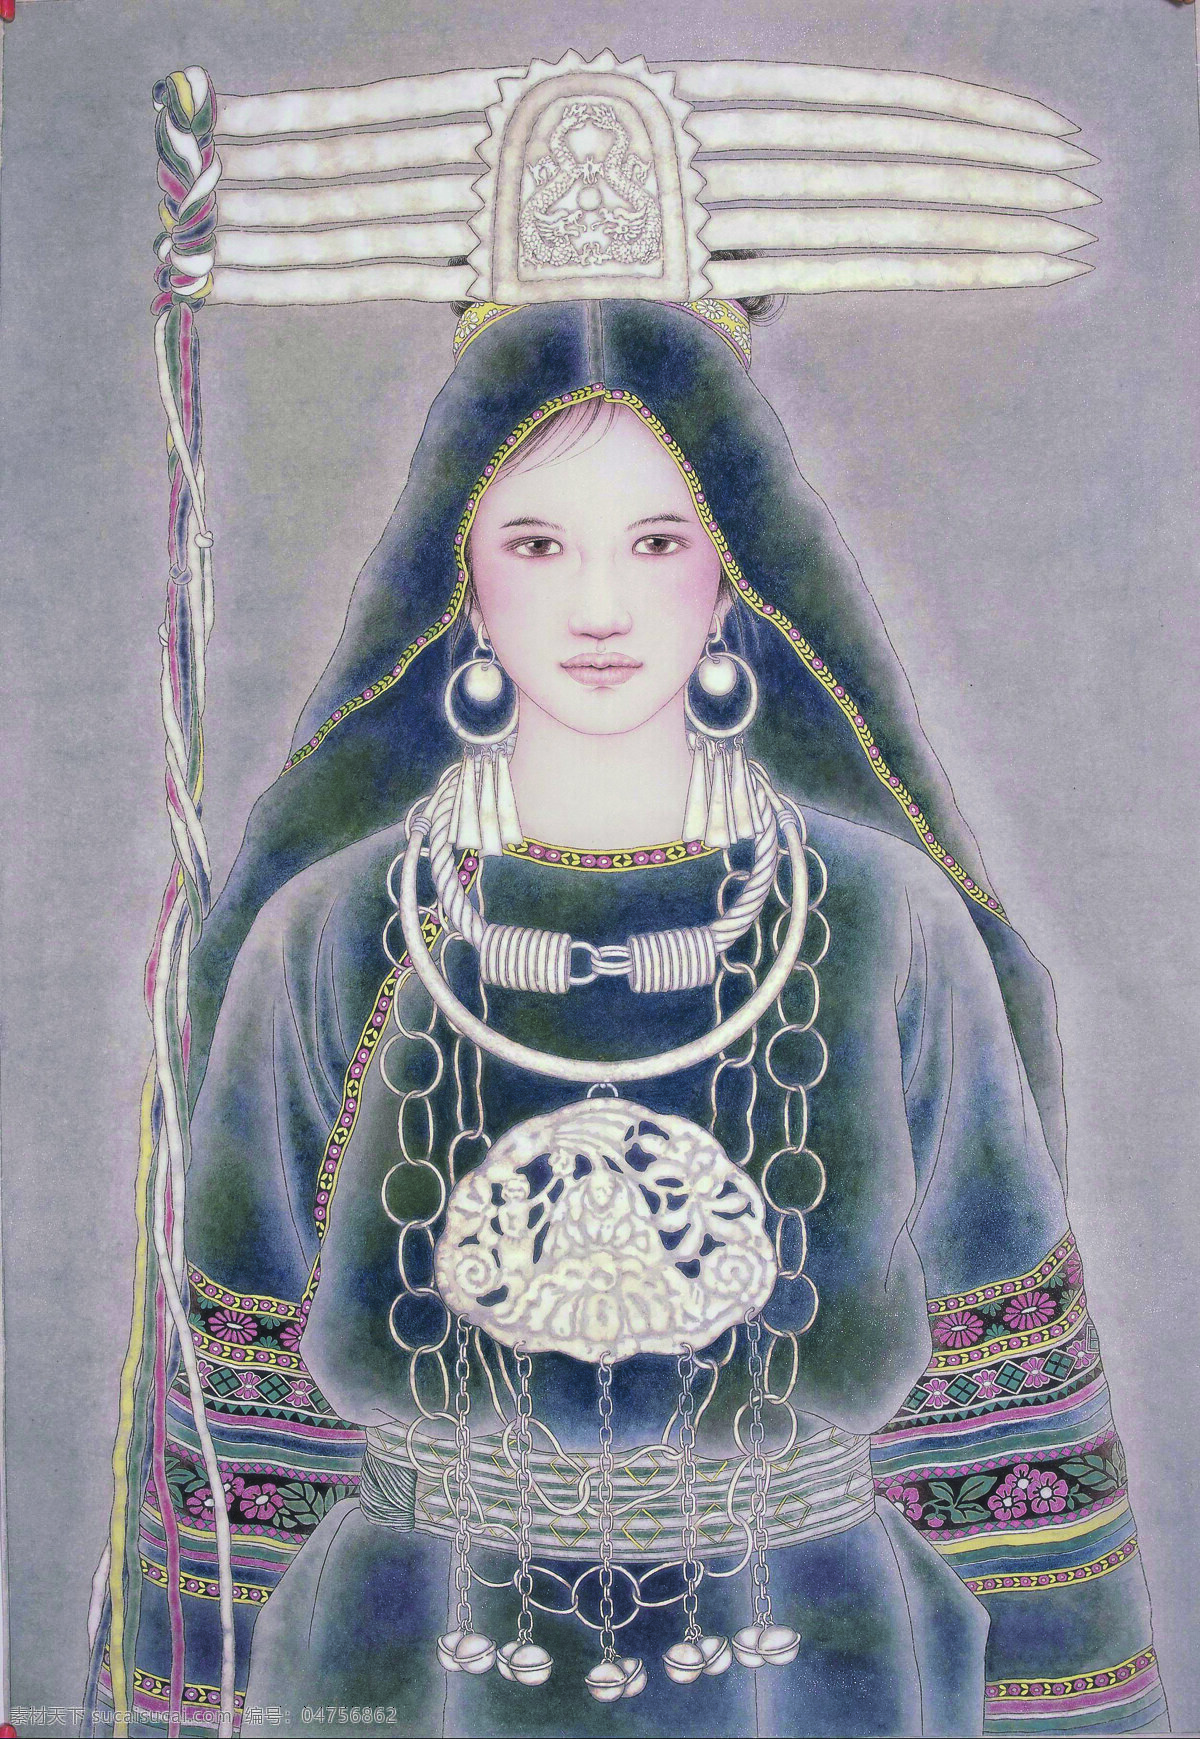 付洛红人物画 美术 中国画 工笔画 人物画 女人 女子 少数民族姑娘 女青年 文化艺术 绘画书法